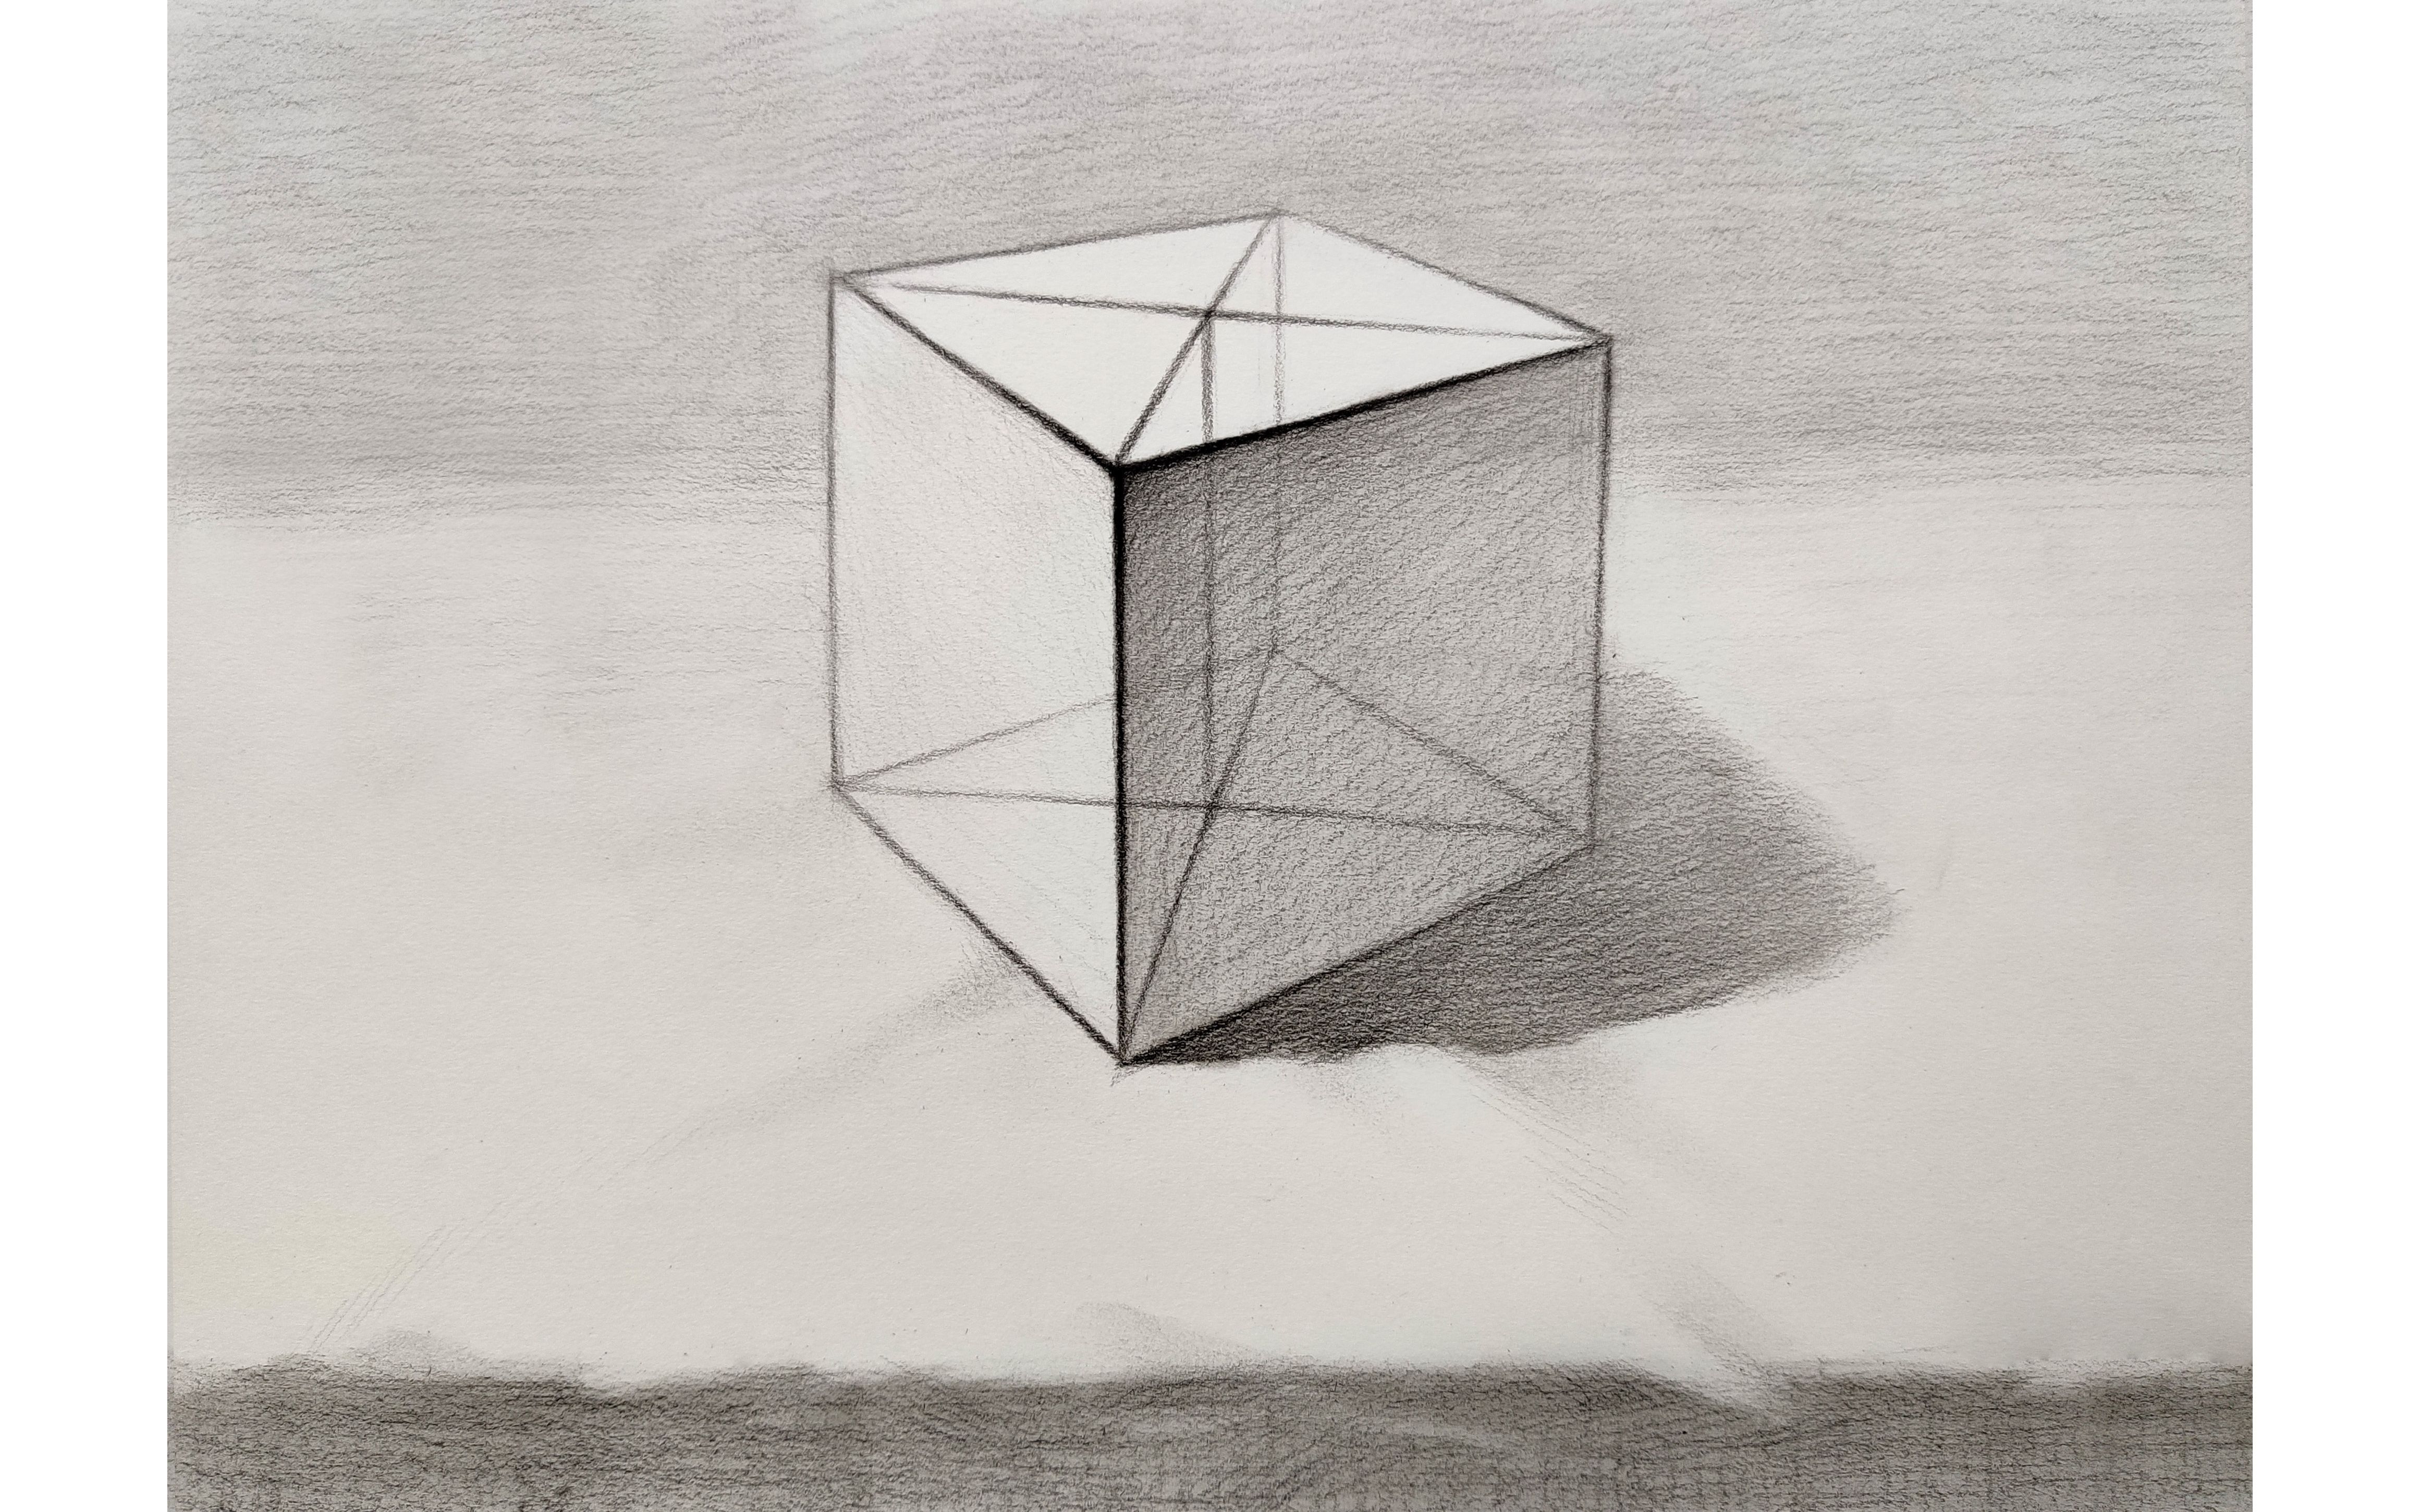 立方体空间构成草图图片